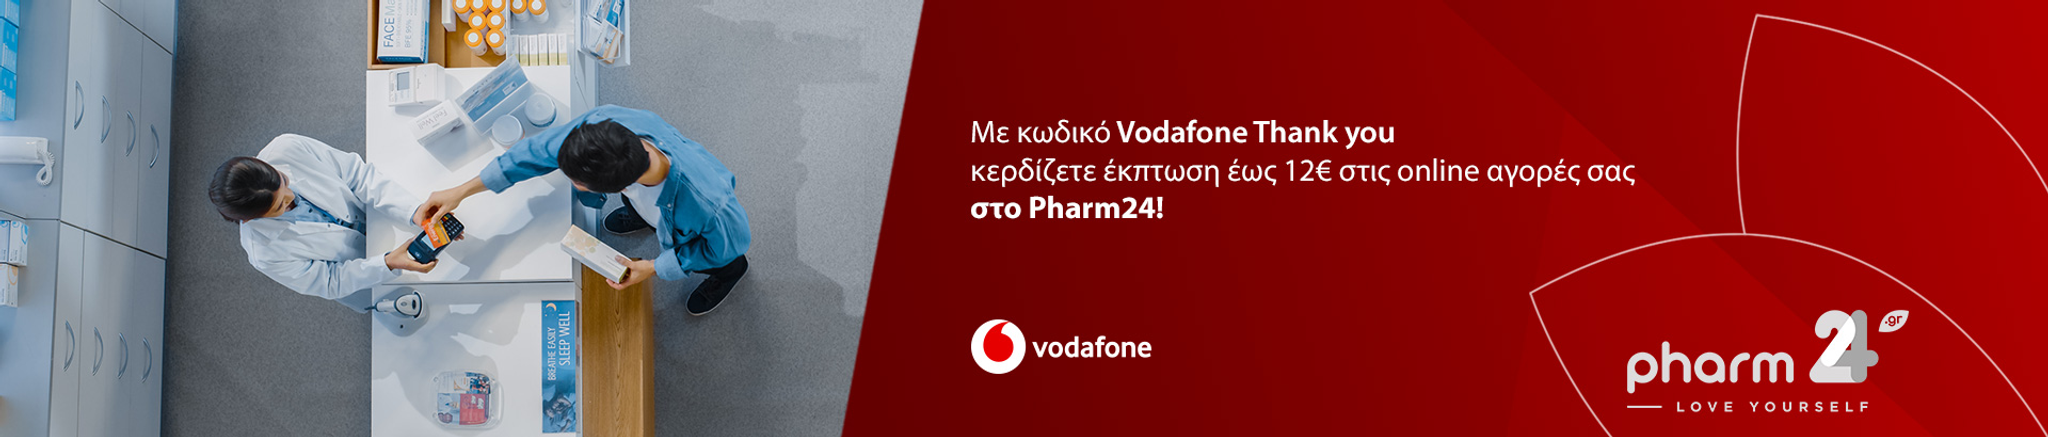 Καλωσορίσατε στο πρόγραμμα Vodafone Thank You